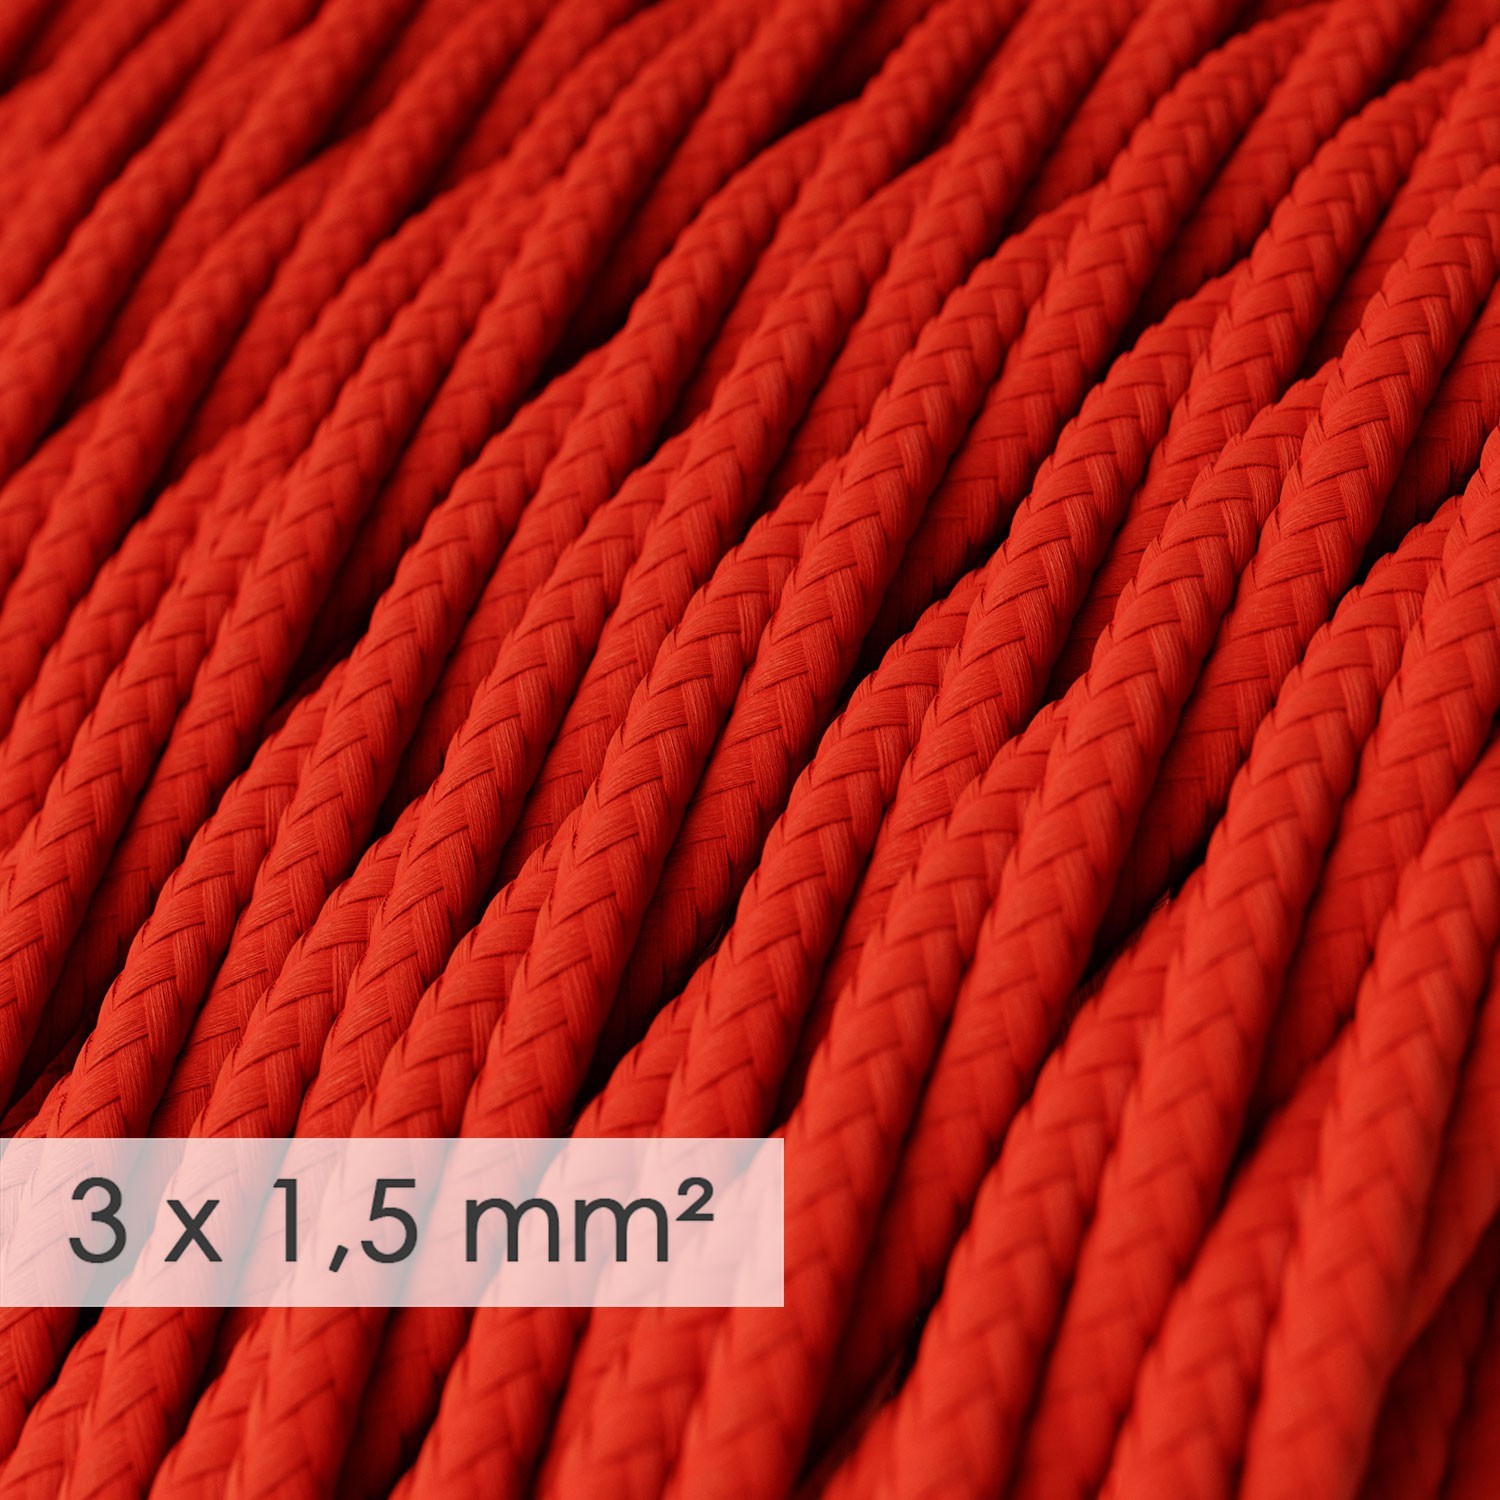 Zavit kabel večjega preseka (3x1,50) - rdeč TM09